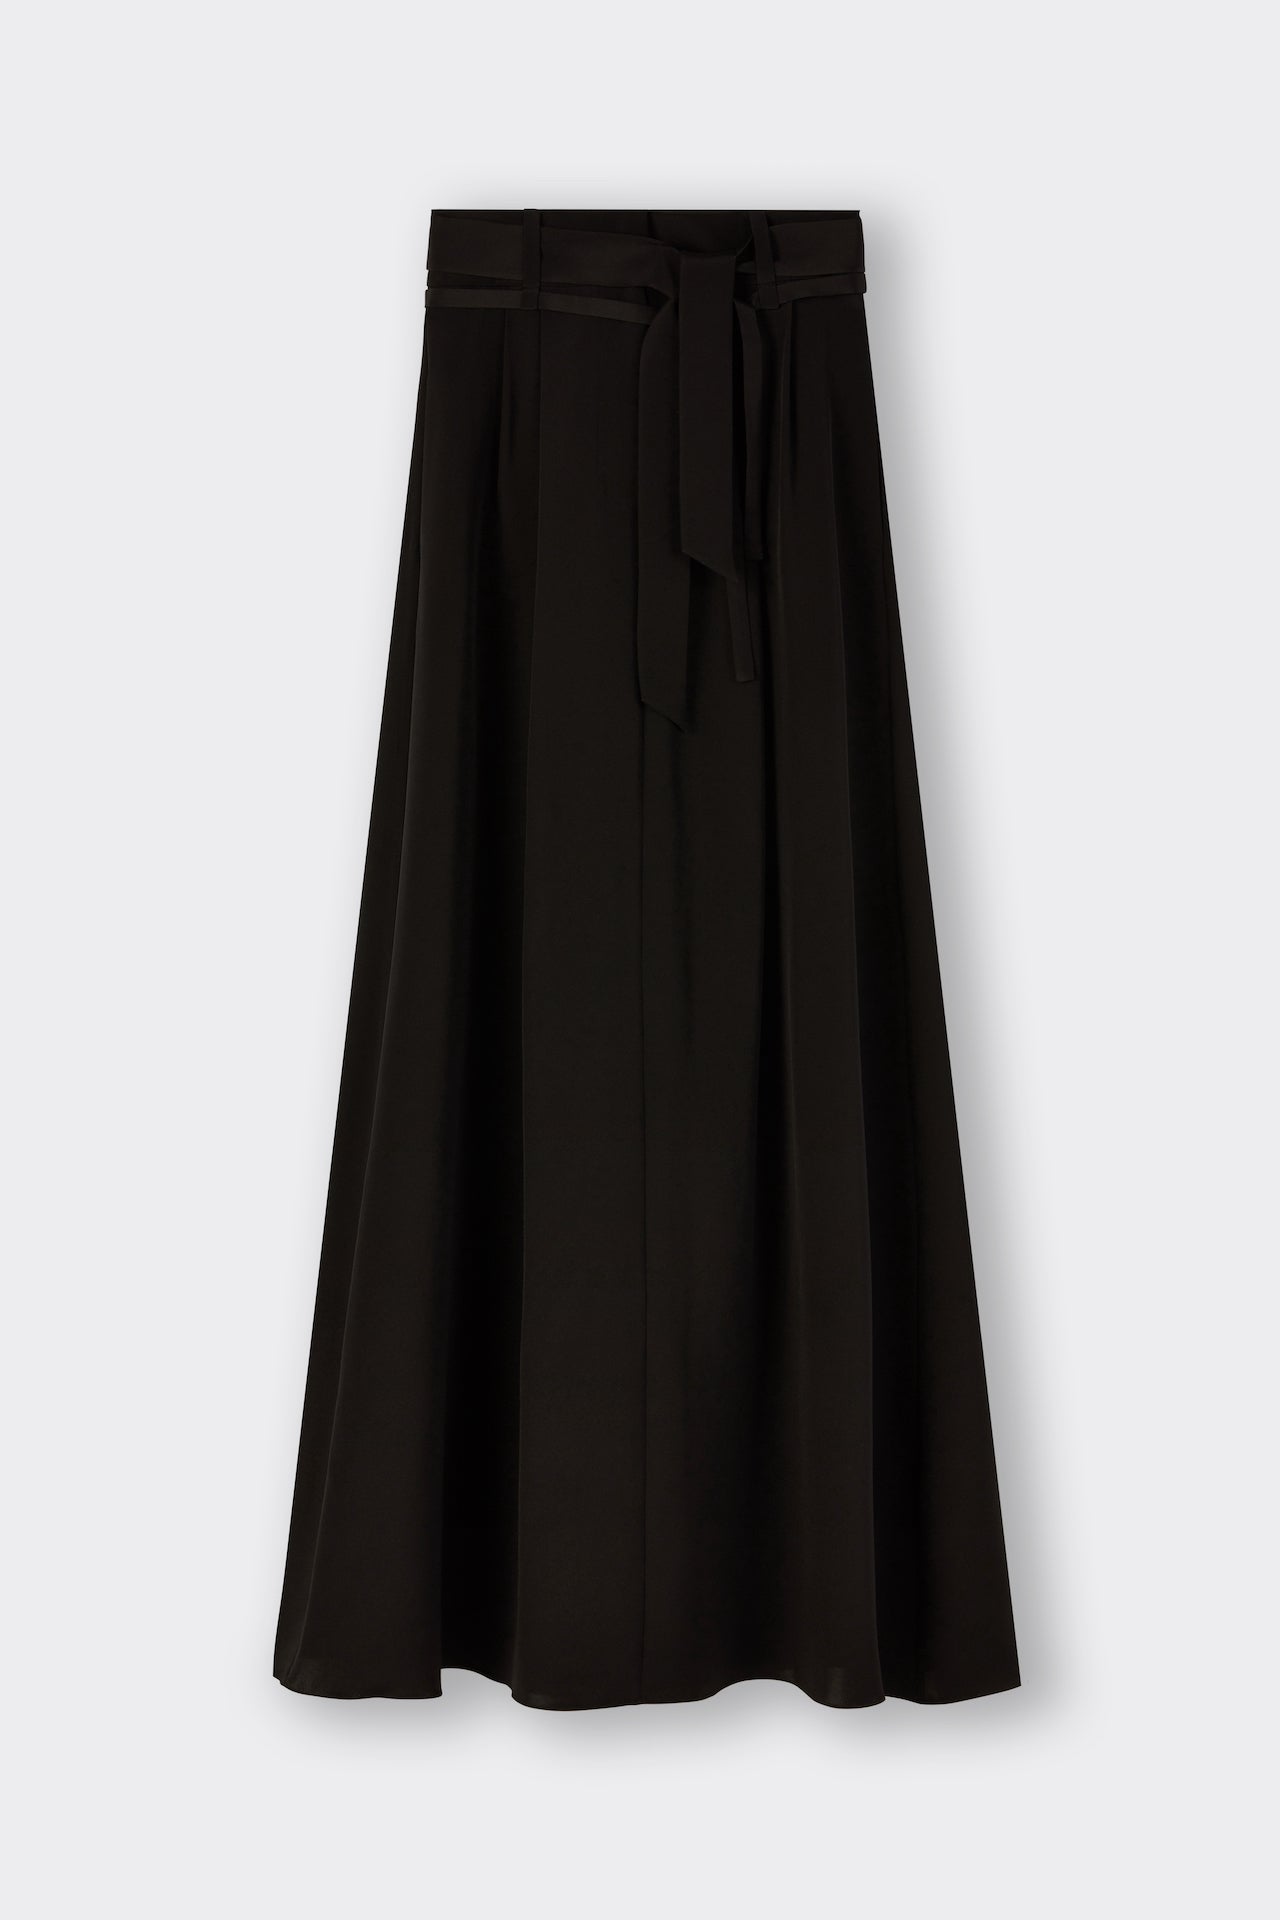 Warwick Skirt in Black | Noon By Noor